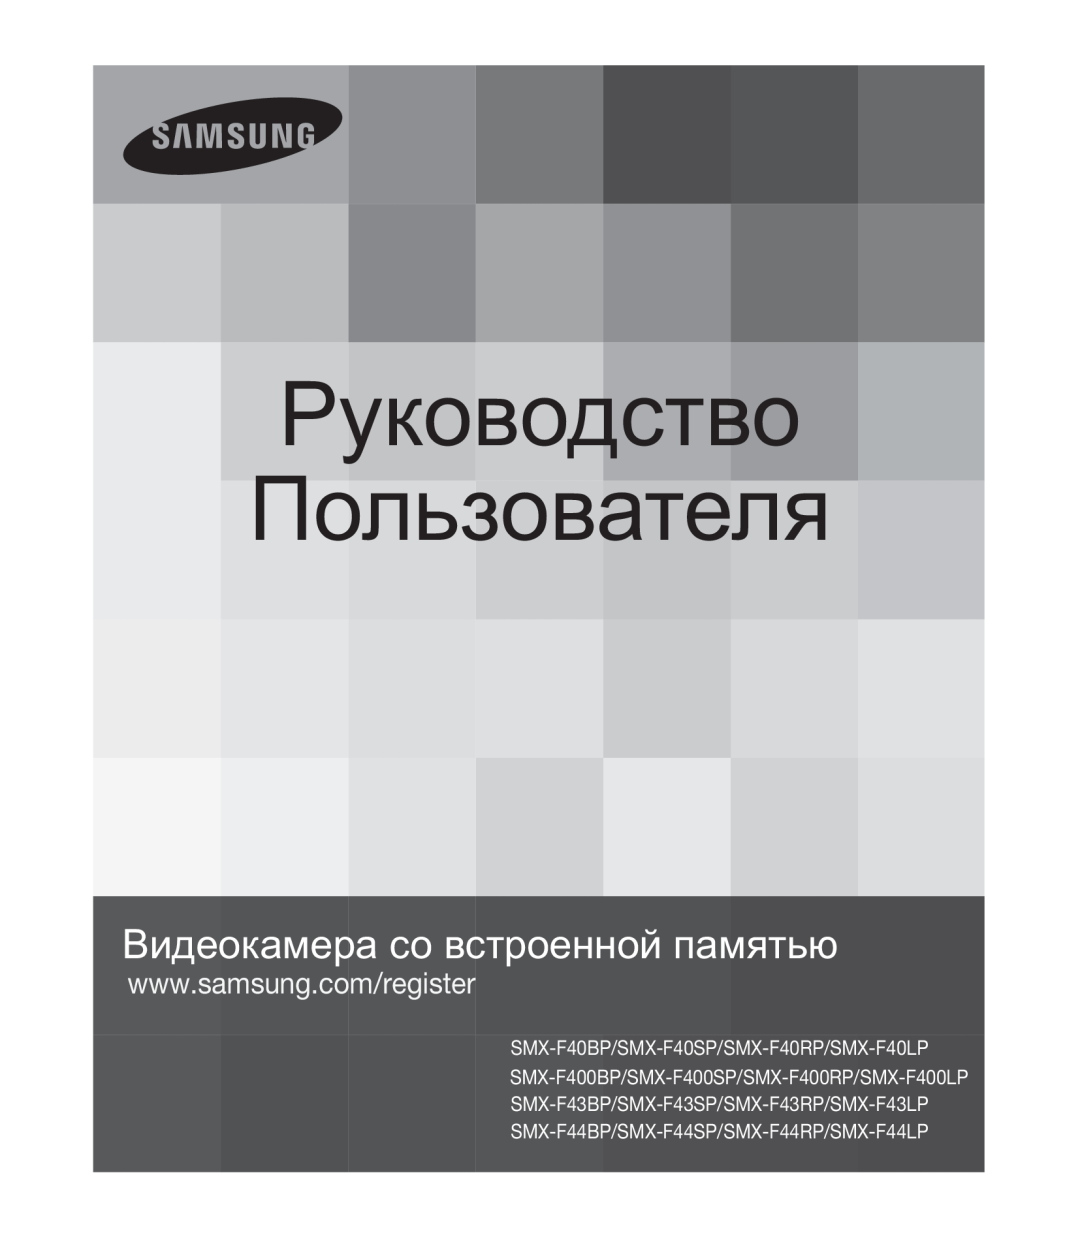 Samsung SMX-F40BP/XEB, SMX-F44BP/EDC, SMX-K40BP/XEB manual Ɋɭɤɨɜɨɞɫɬɜɨ ɉɨɥɶɡɨɜɚɬɟɥɹ, ȼɢɞɟɨɤɚɦɟɪɚɫɨɜɫɬɪɨɟɧɧɨɣɩɚɦɹɬɶɸ 